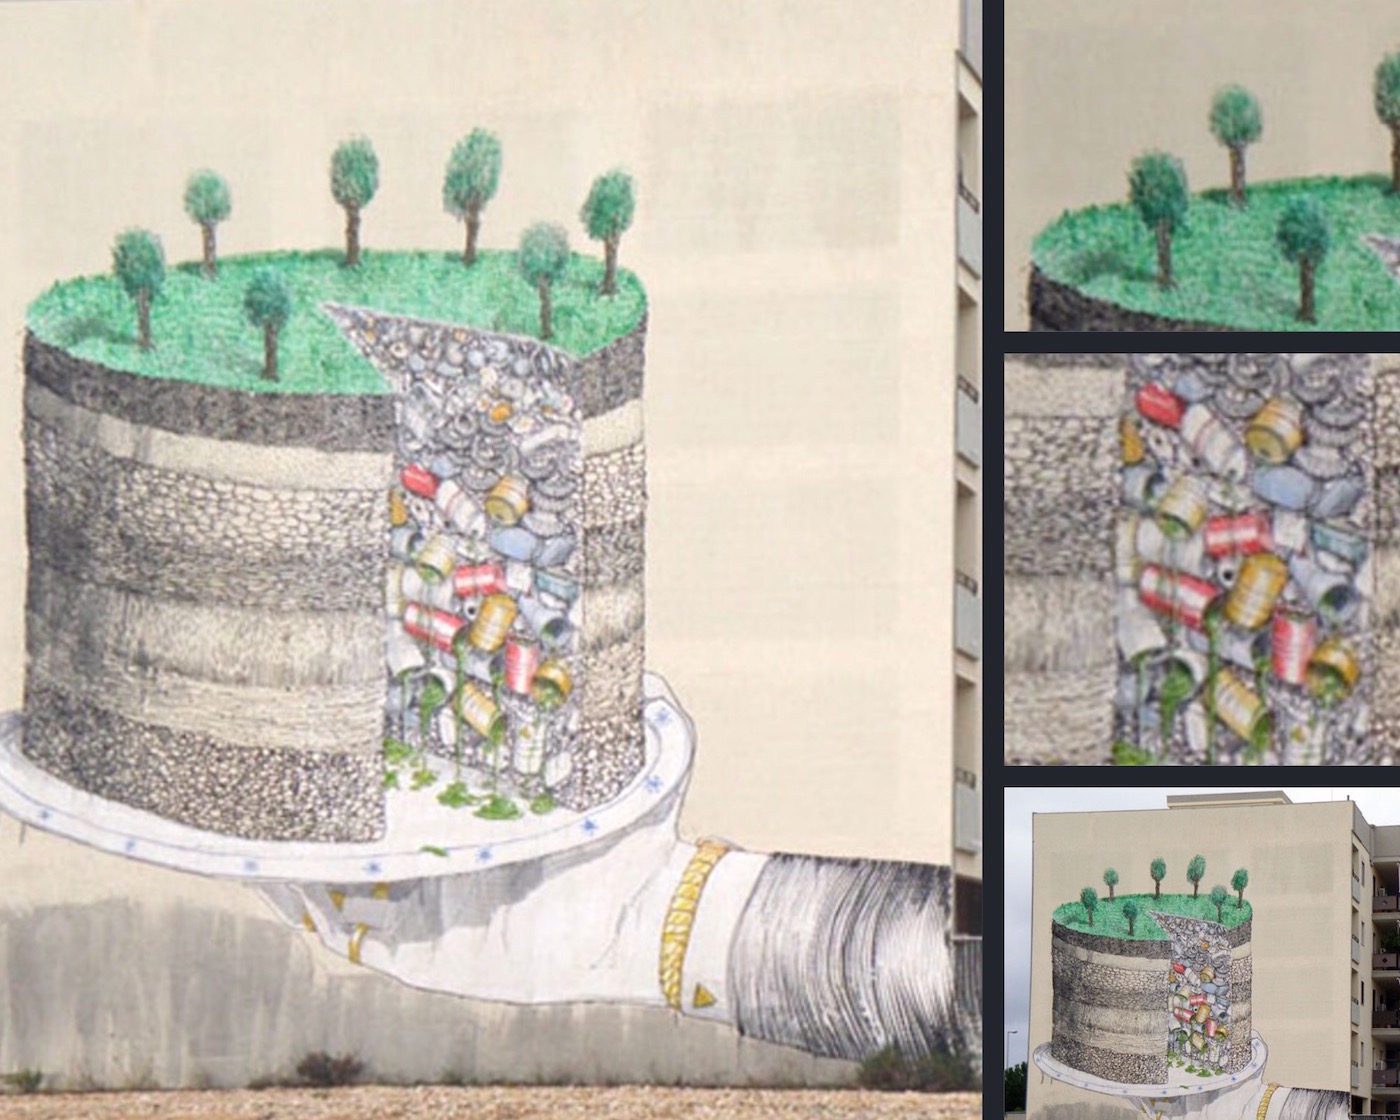 street art tema sustainability: rifiuti nascosti nel terreno danneggiano l'ambiente